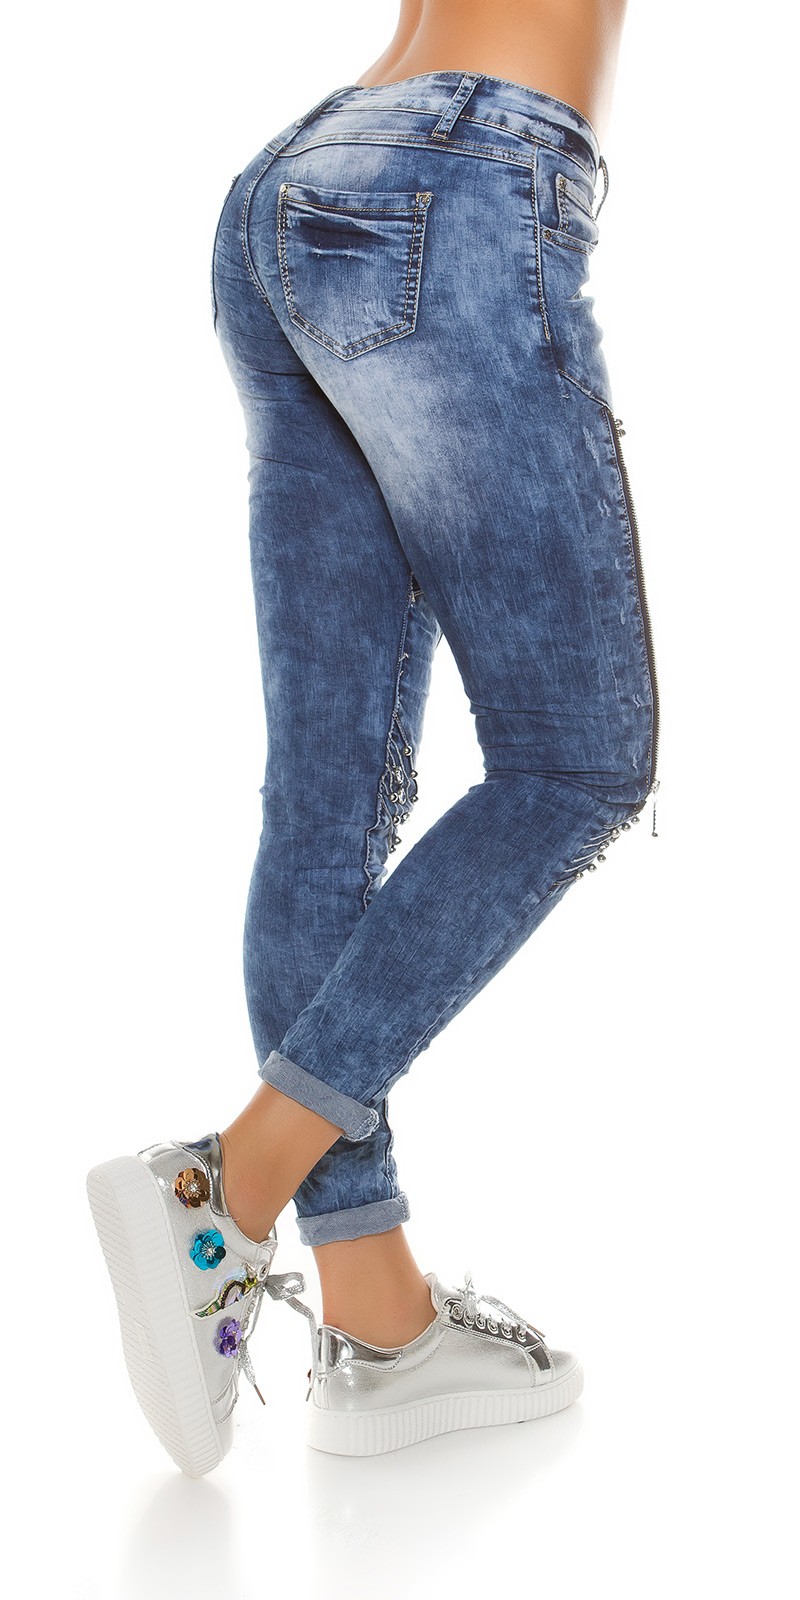 Jeans c/ cristais 9